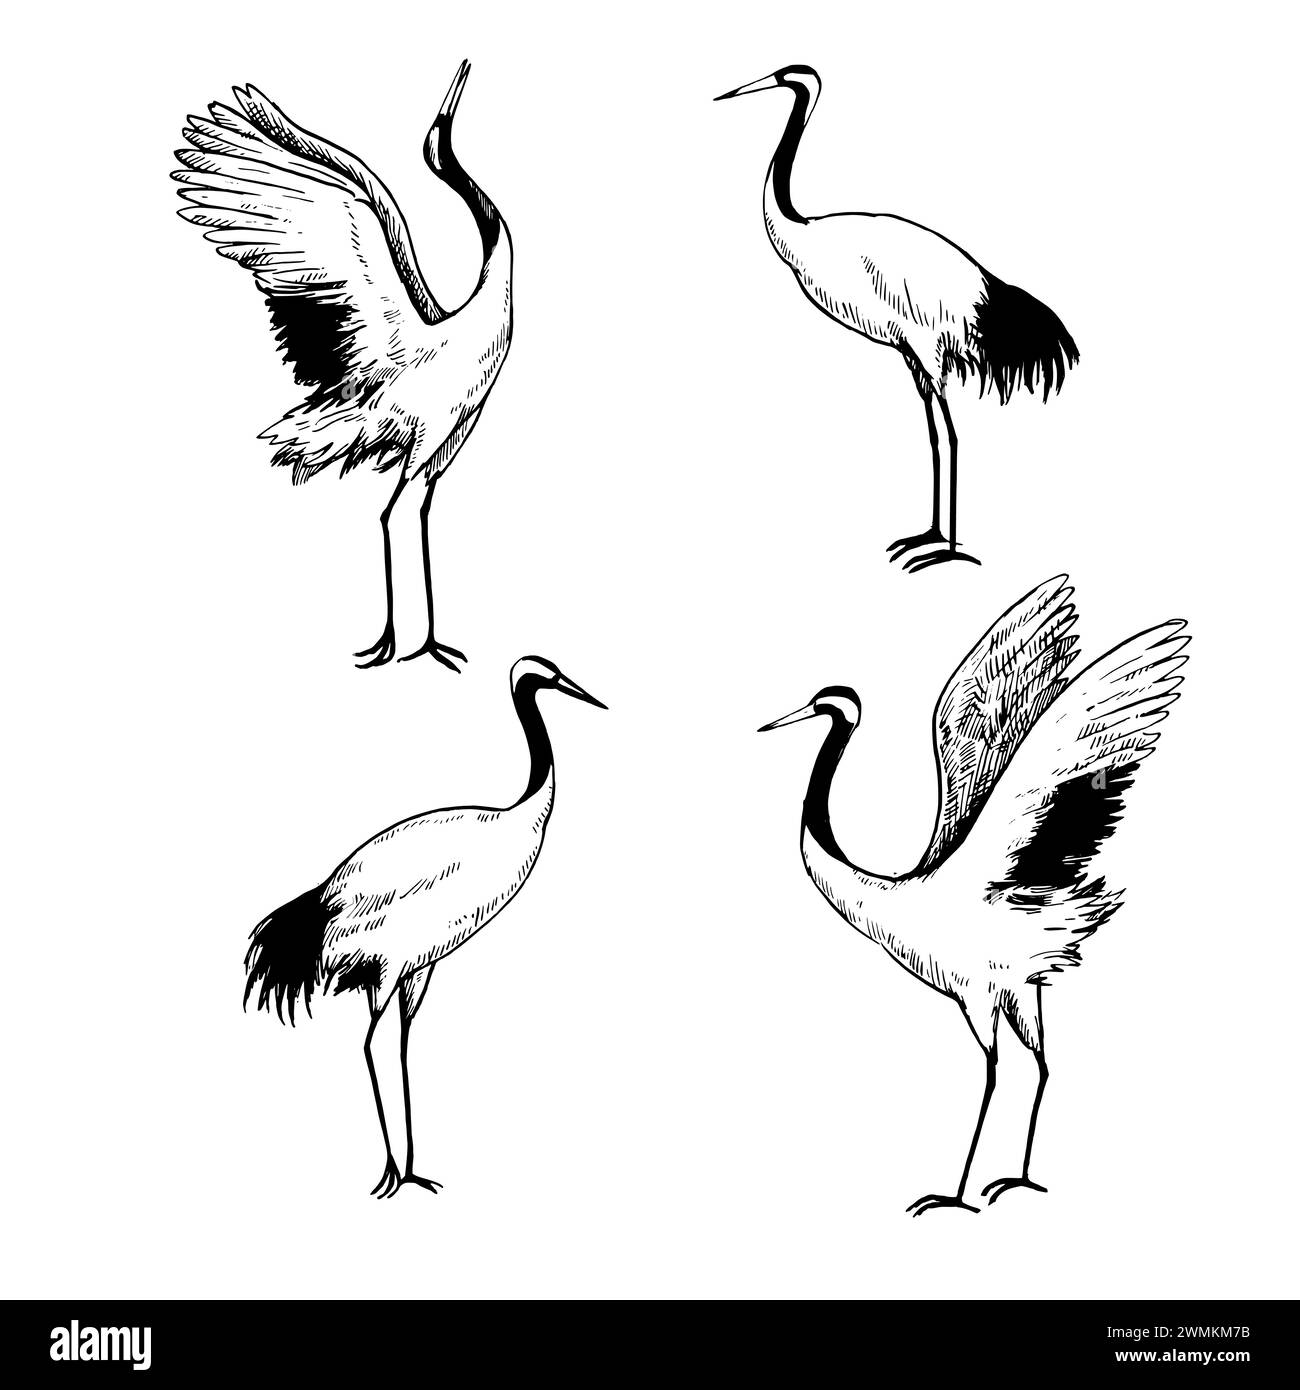 Illustrazione vettoriale bianca e nera delle gru giapponesi. Varie posizioni di uccelli isolati su sfondo bianco. Disegno a inchiostro. Illustrazione Vettoriale